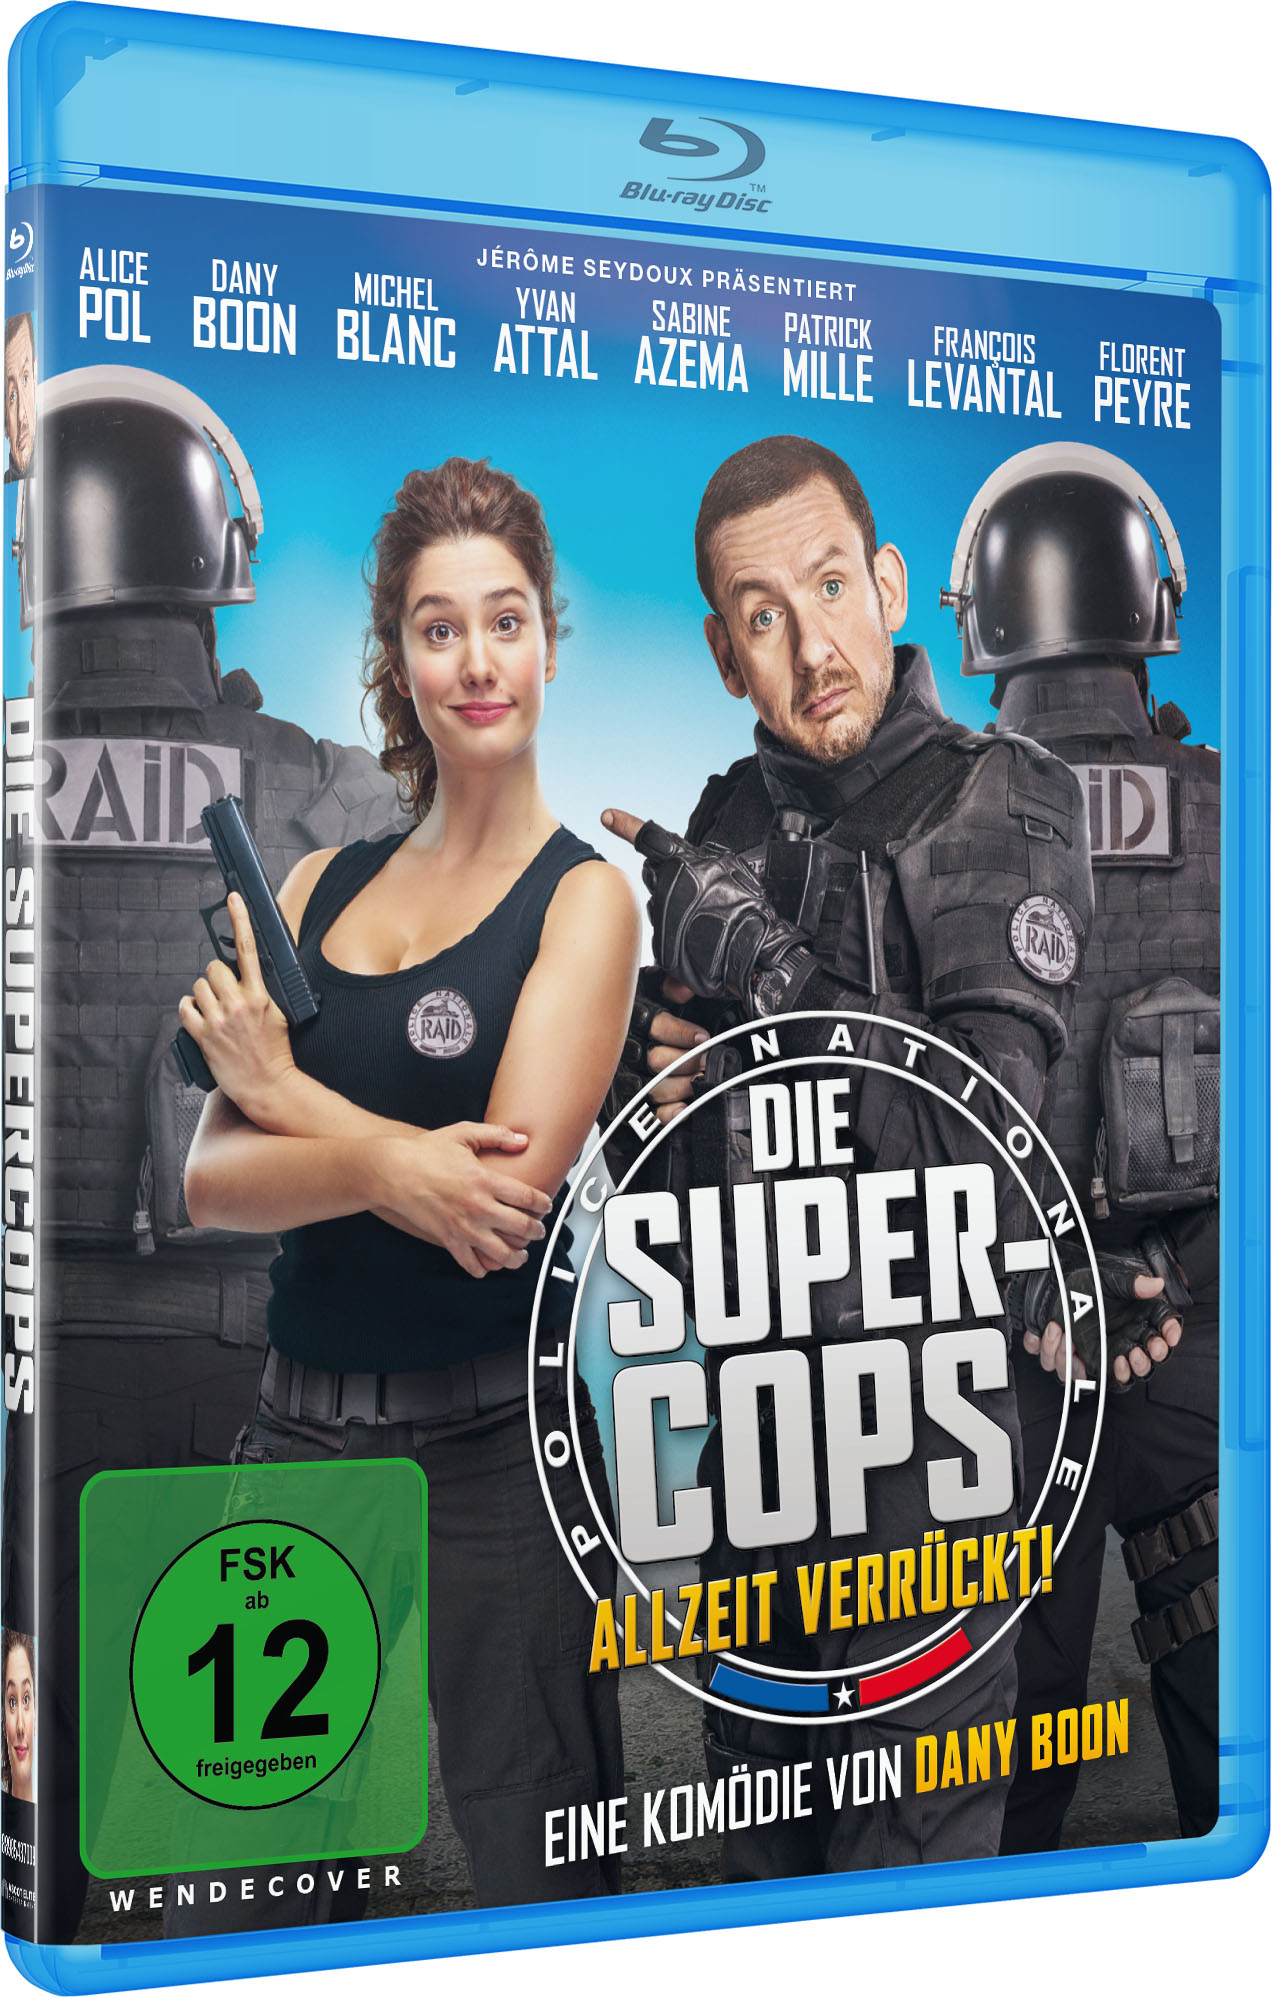 Die Super-Cops Verrückt! - Blu-ray Allzeit